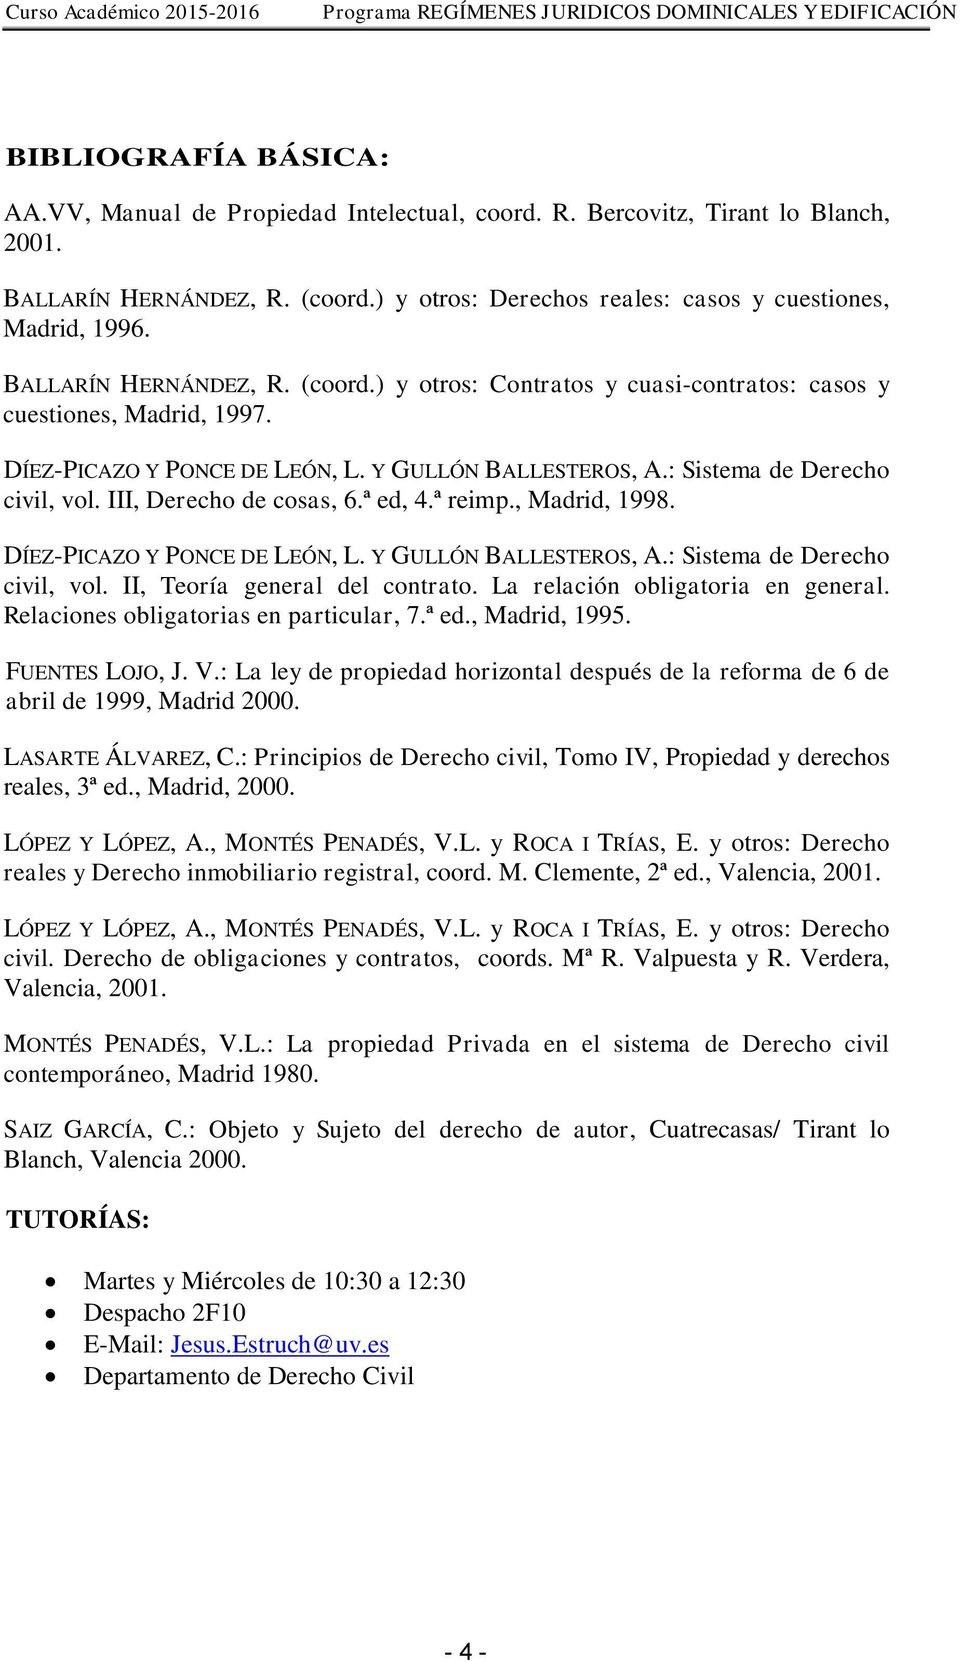 III, Derecho de cosas, 6.ª ed, 4.ª reimp., Madrid, 1998. DÍEZ-PICAZO Y PONCE DE LEÓN, L. Y GULLÓN BALLESTEROS, A.: Sistema de Derecho civil, vol. II, Teoría general del contrato.